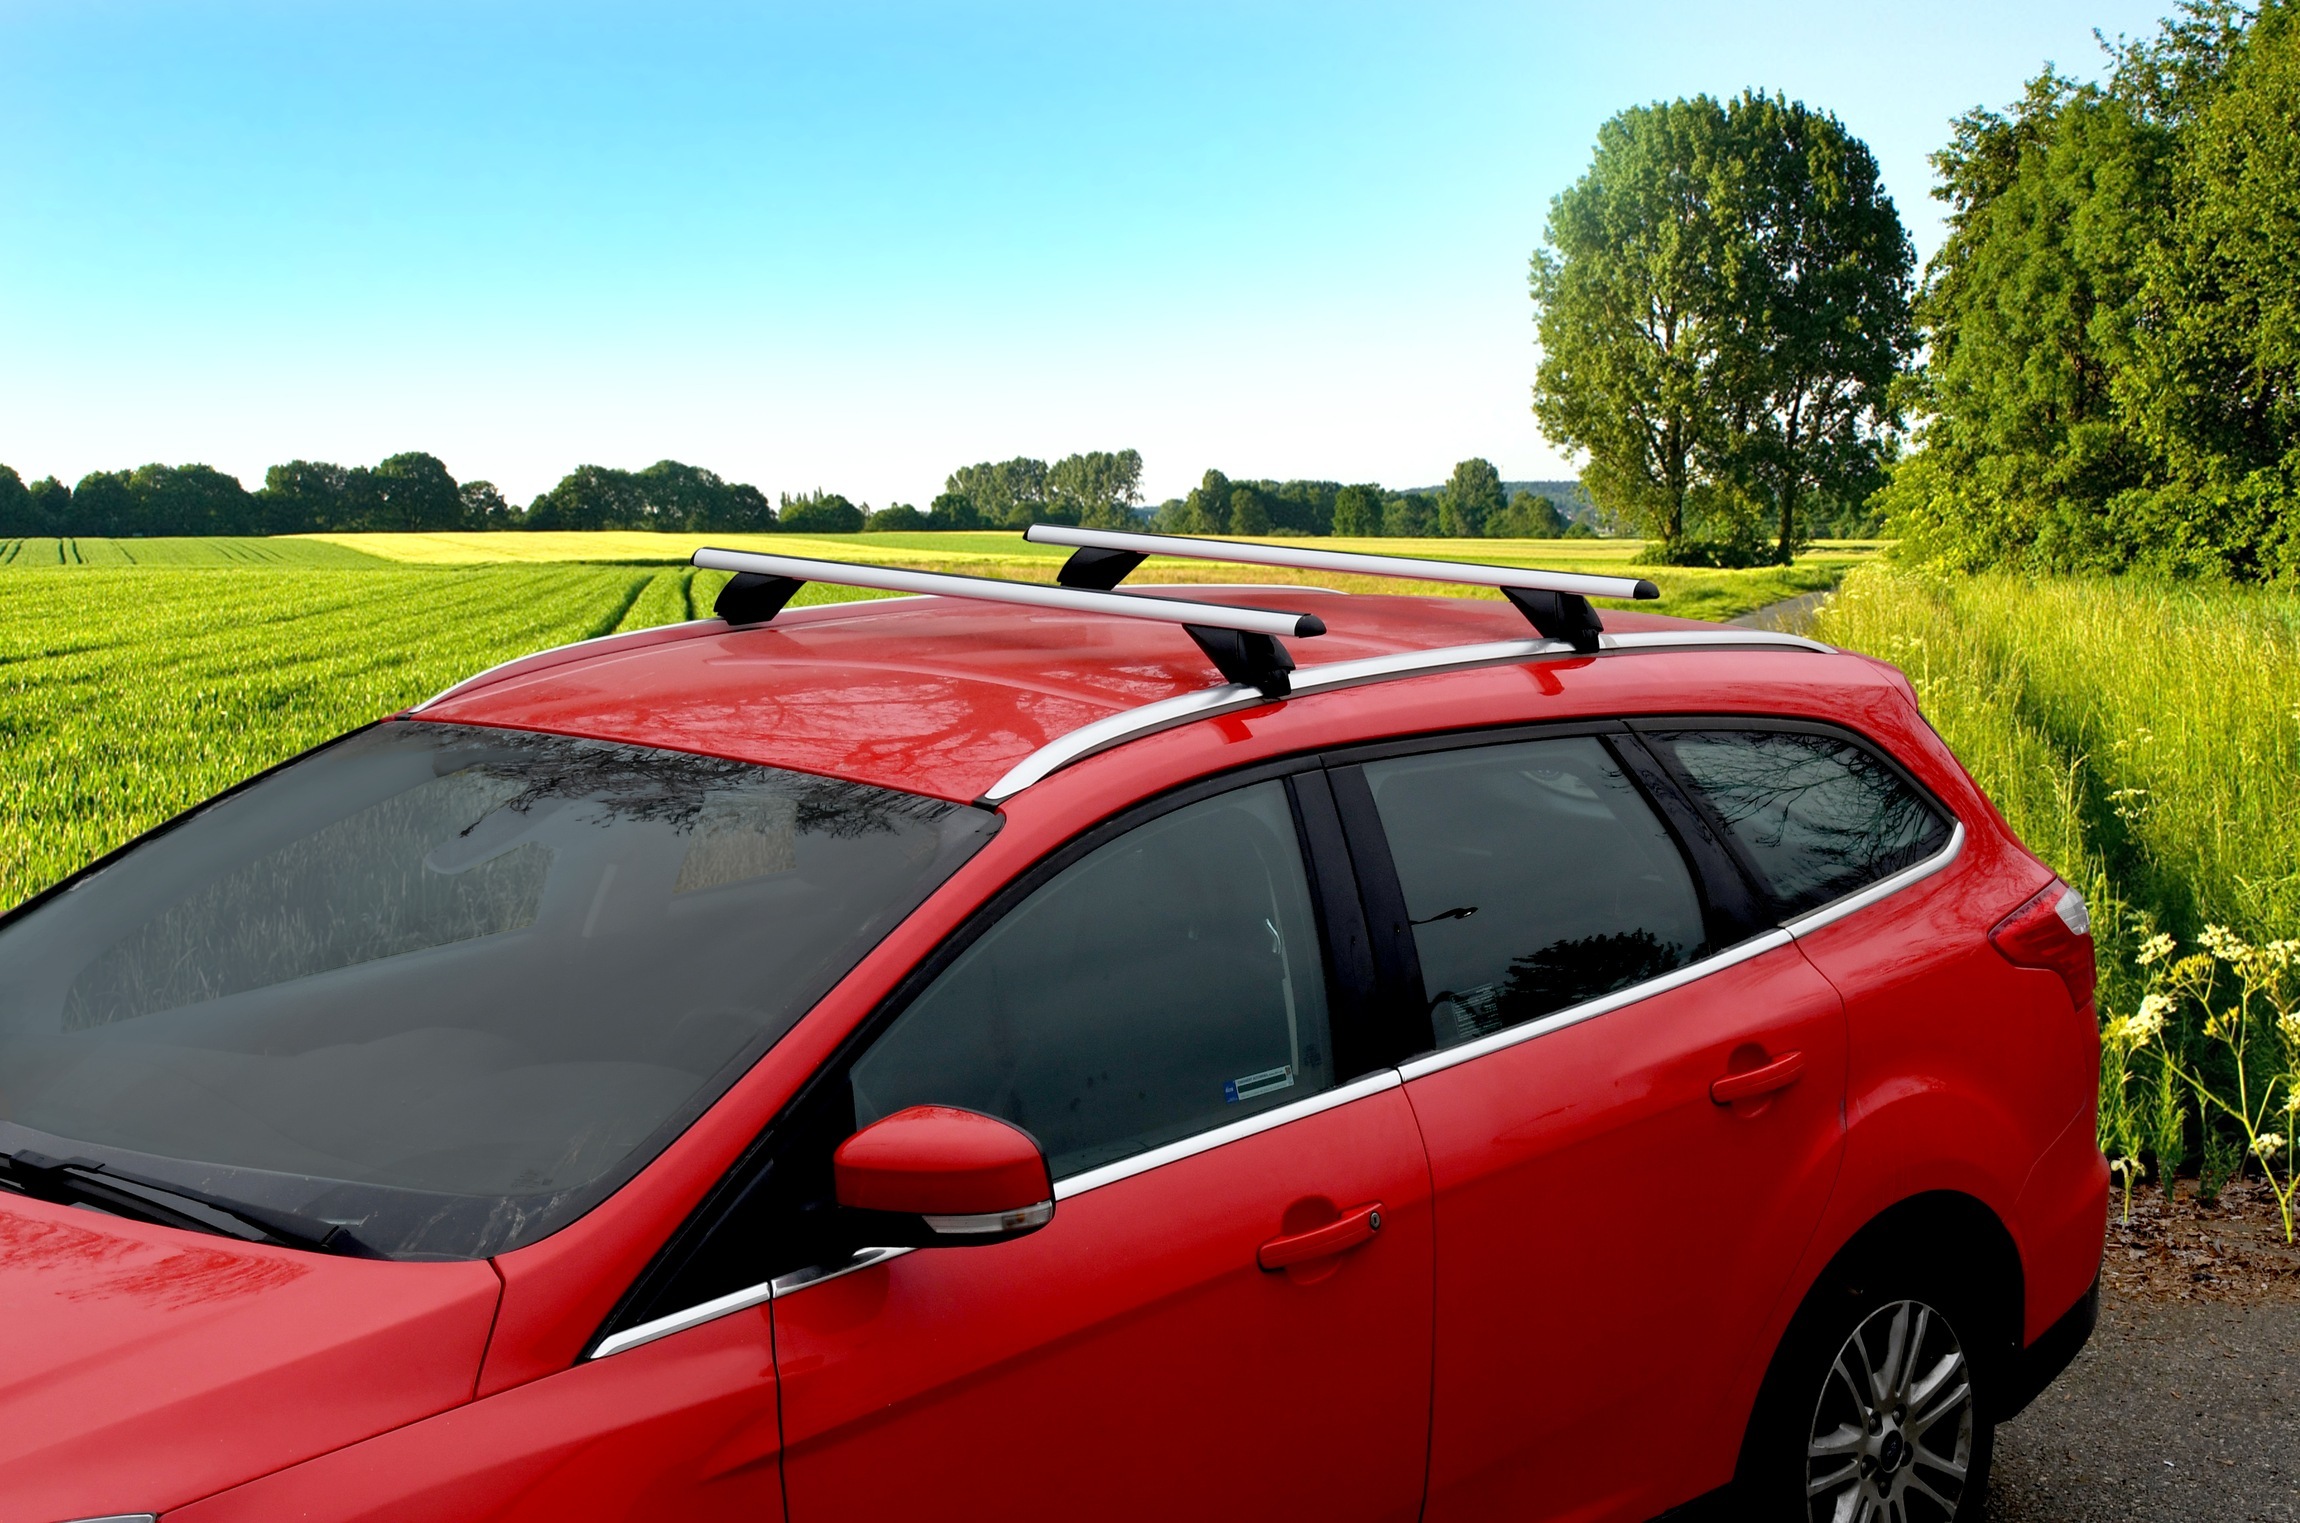 střešní nosiče Compass integrované podelníky na červeném autě v pozadí s polem a stromy